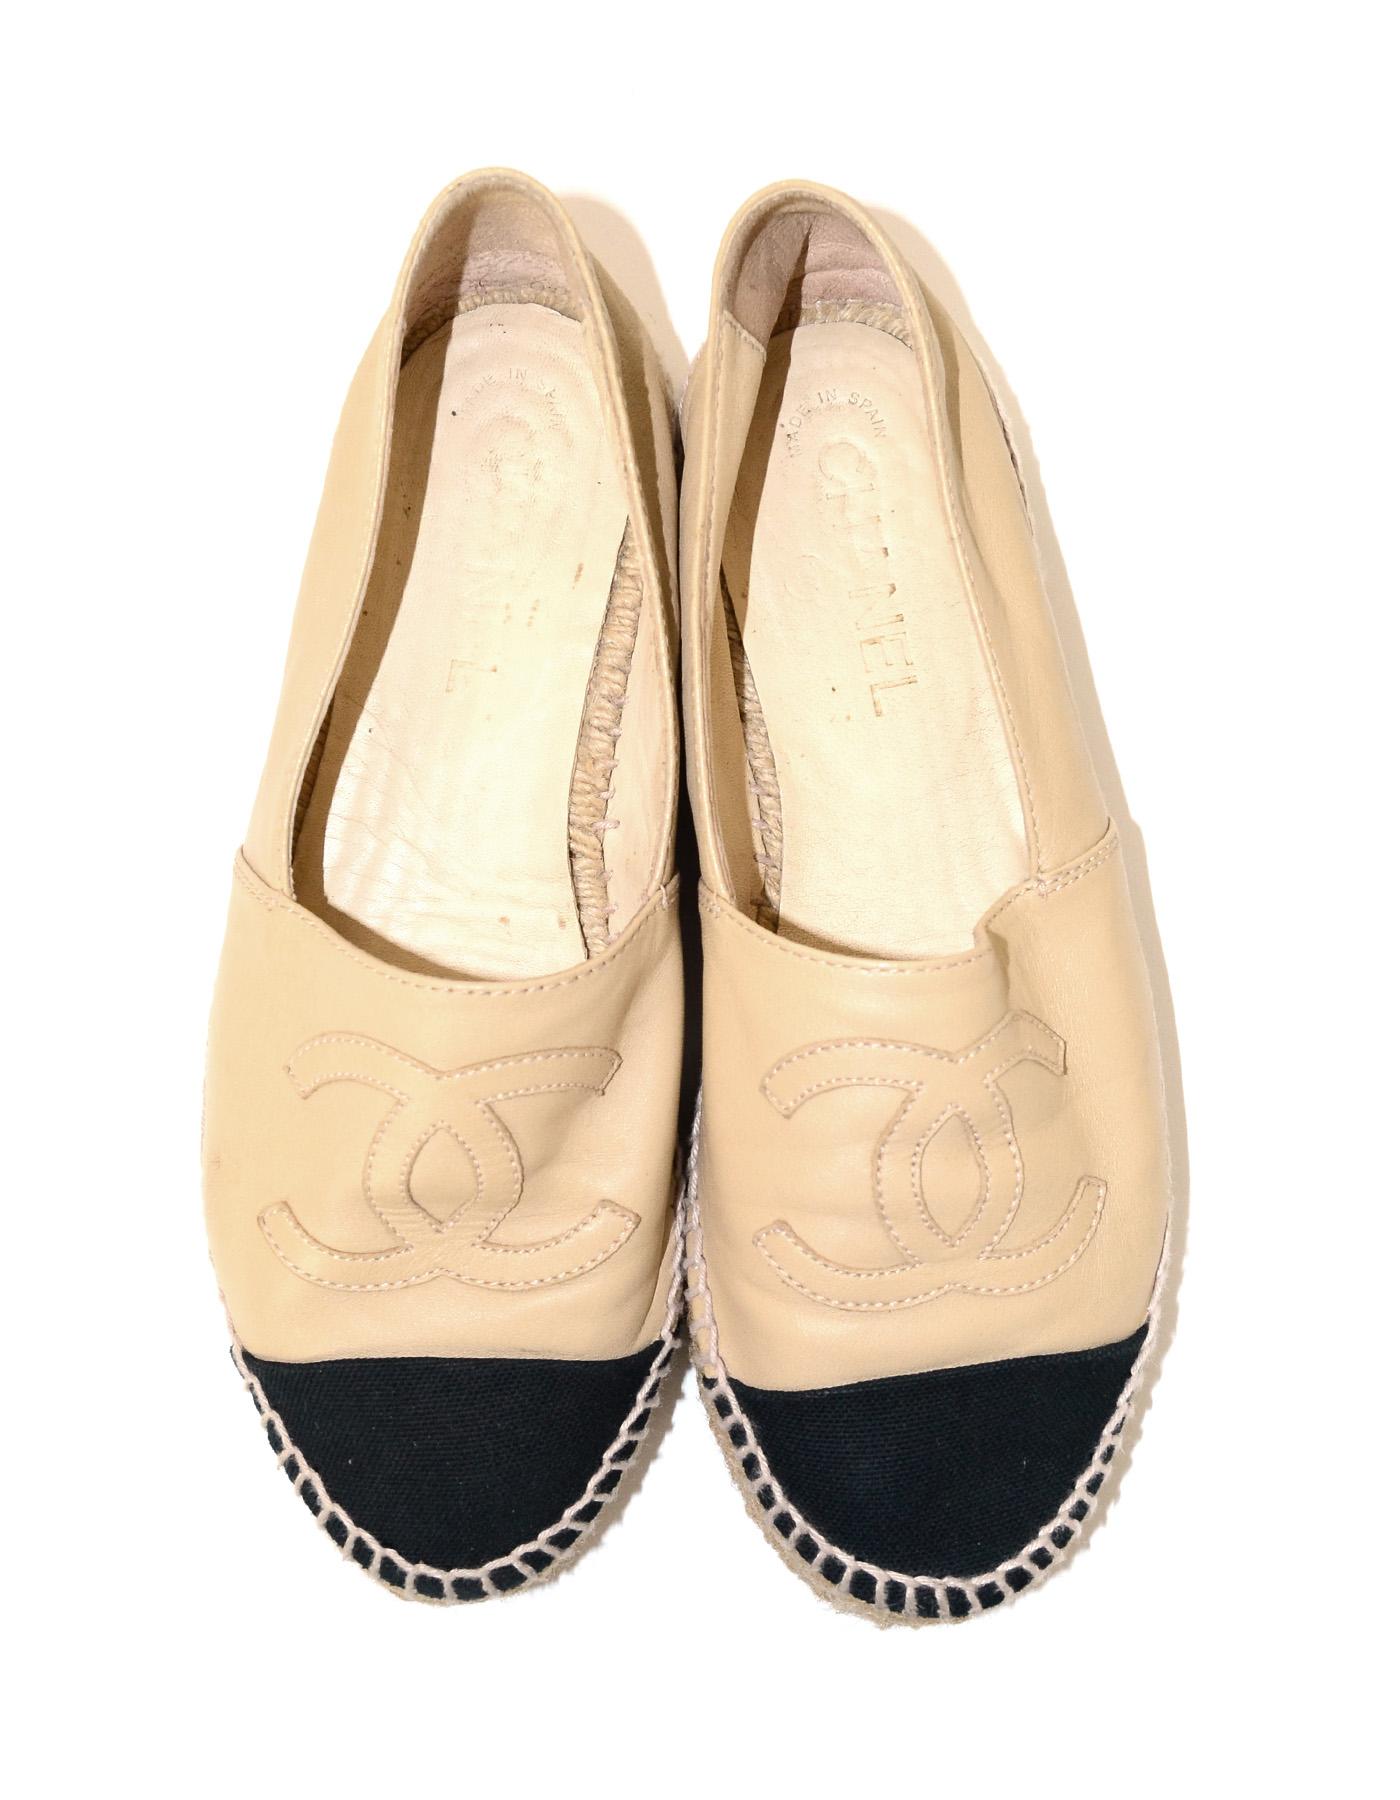 Chanel Tan/Black Leather/Canvas Espadrille Cap Toe Shoes Sz 38 2